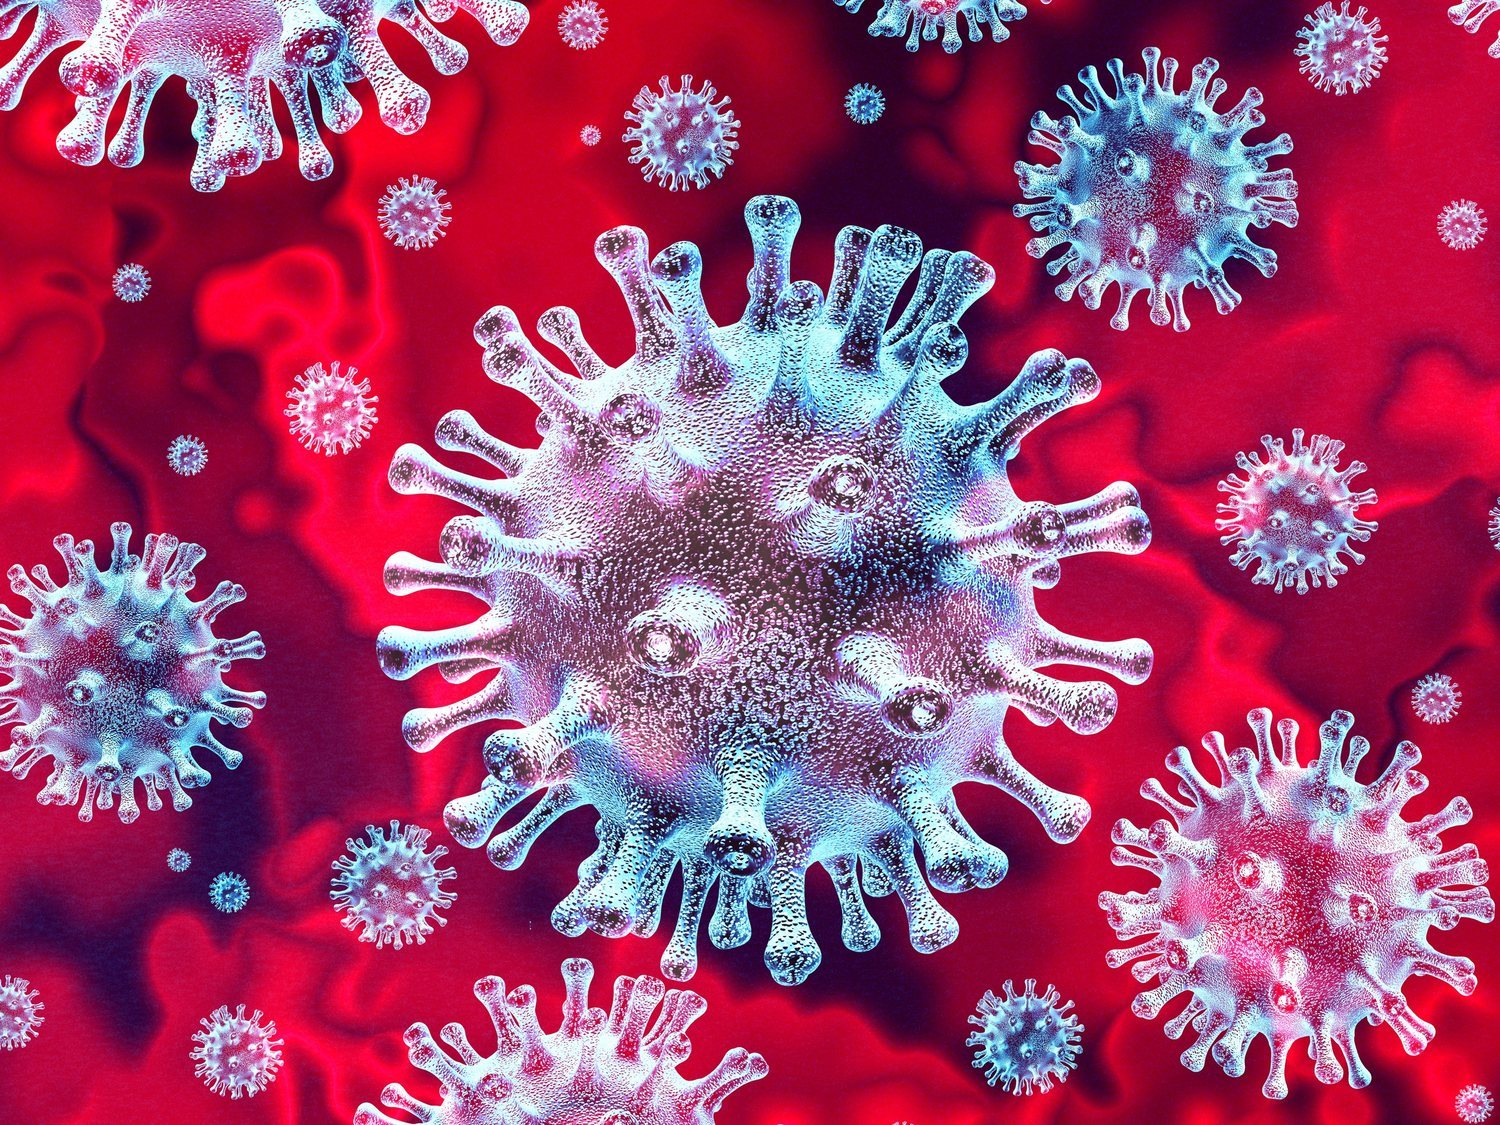 La duda que todavía permanece: ¿Por qué el coronavirus es mucho más grave que una gripe?